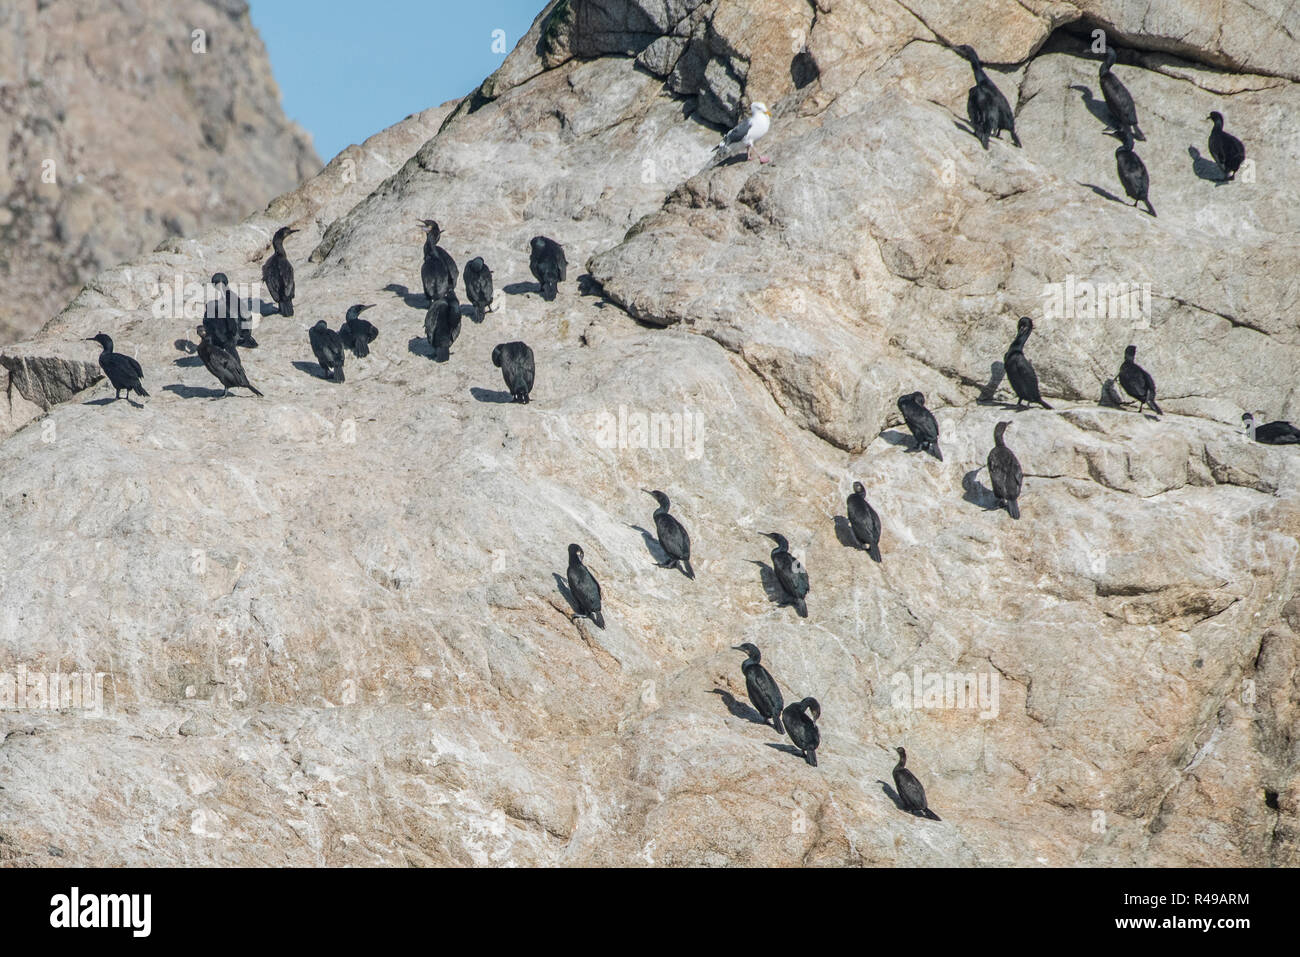 Brandt il cormorano (Phalacrocorax penicillatus) che rendono la loro casa sul ruvido paesaggio delle isole Farallon Nature Preserve nel Pacifico. Foto Stock